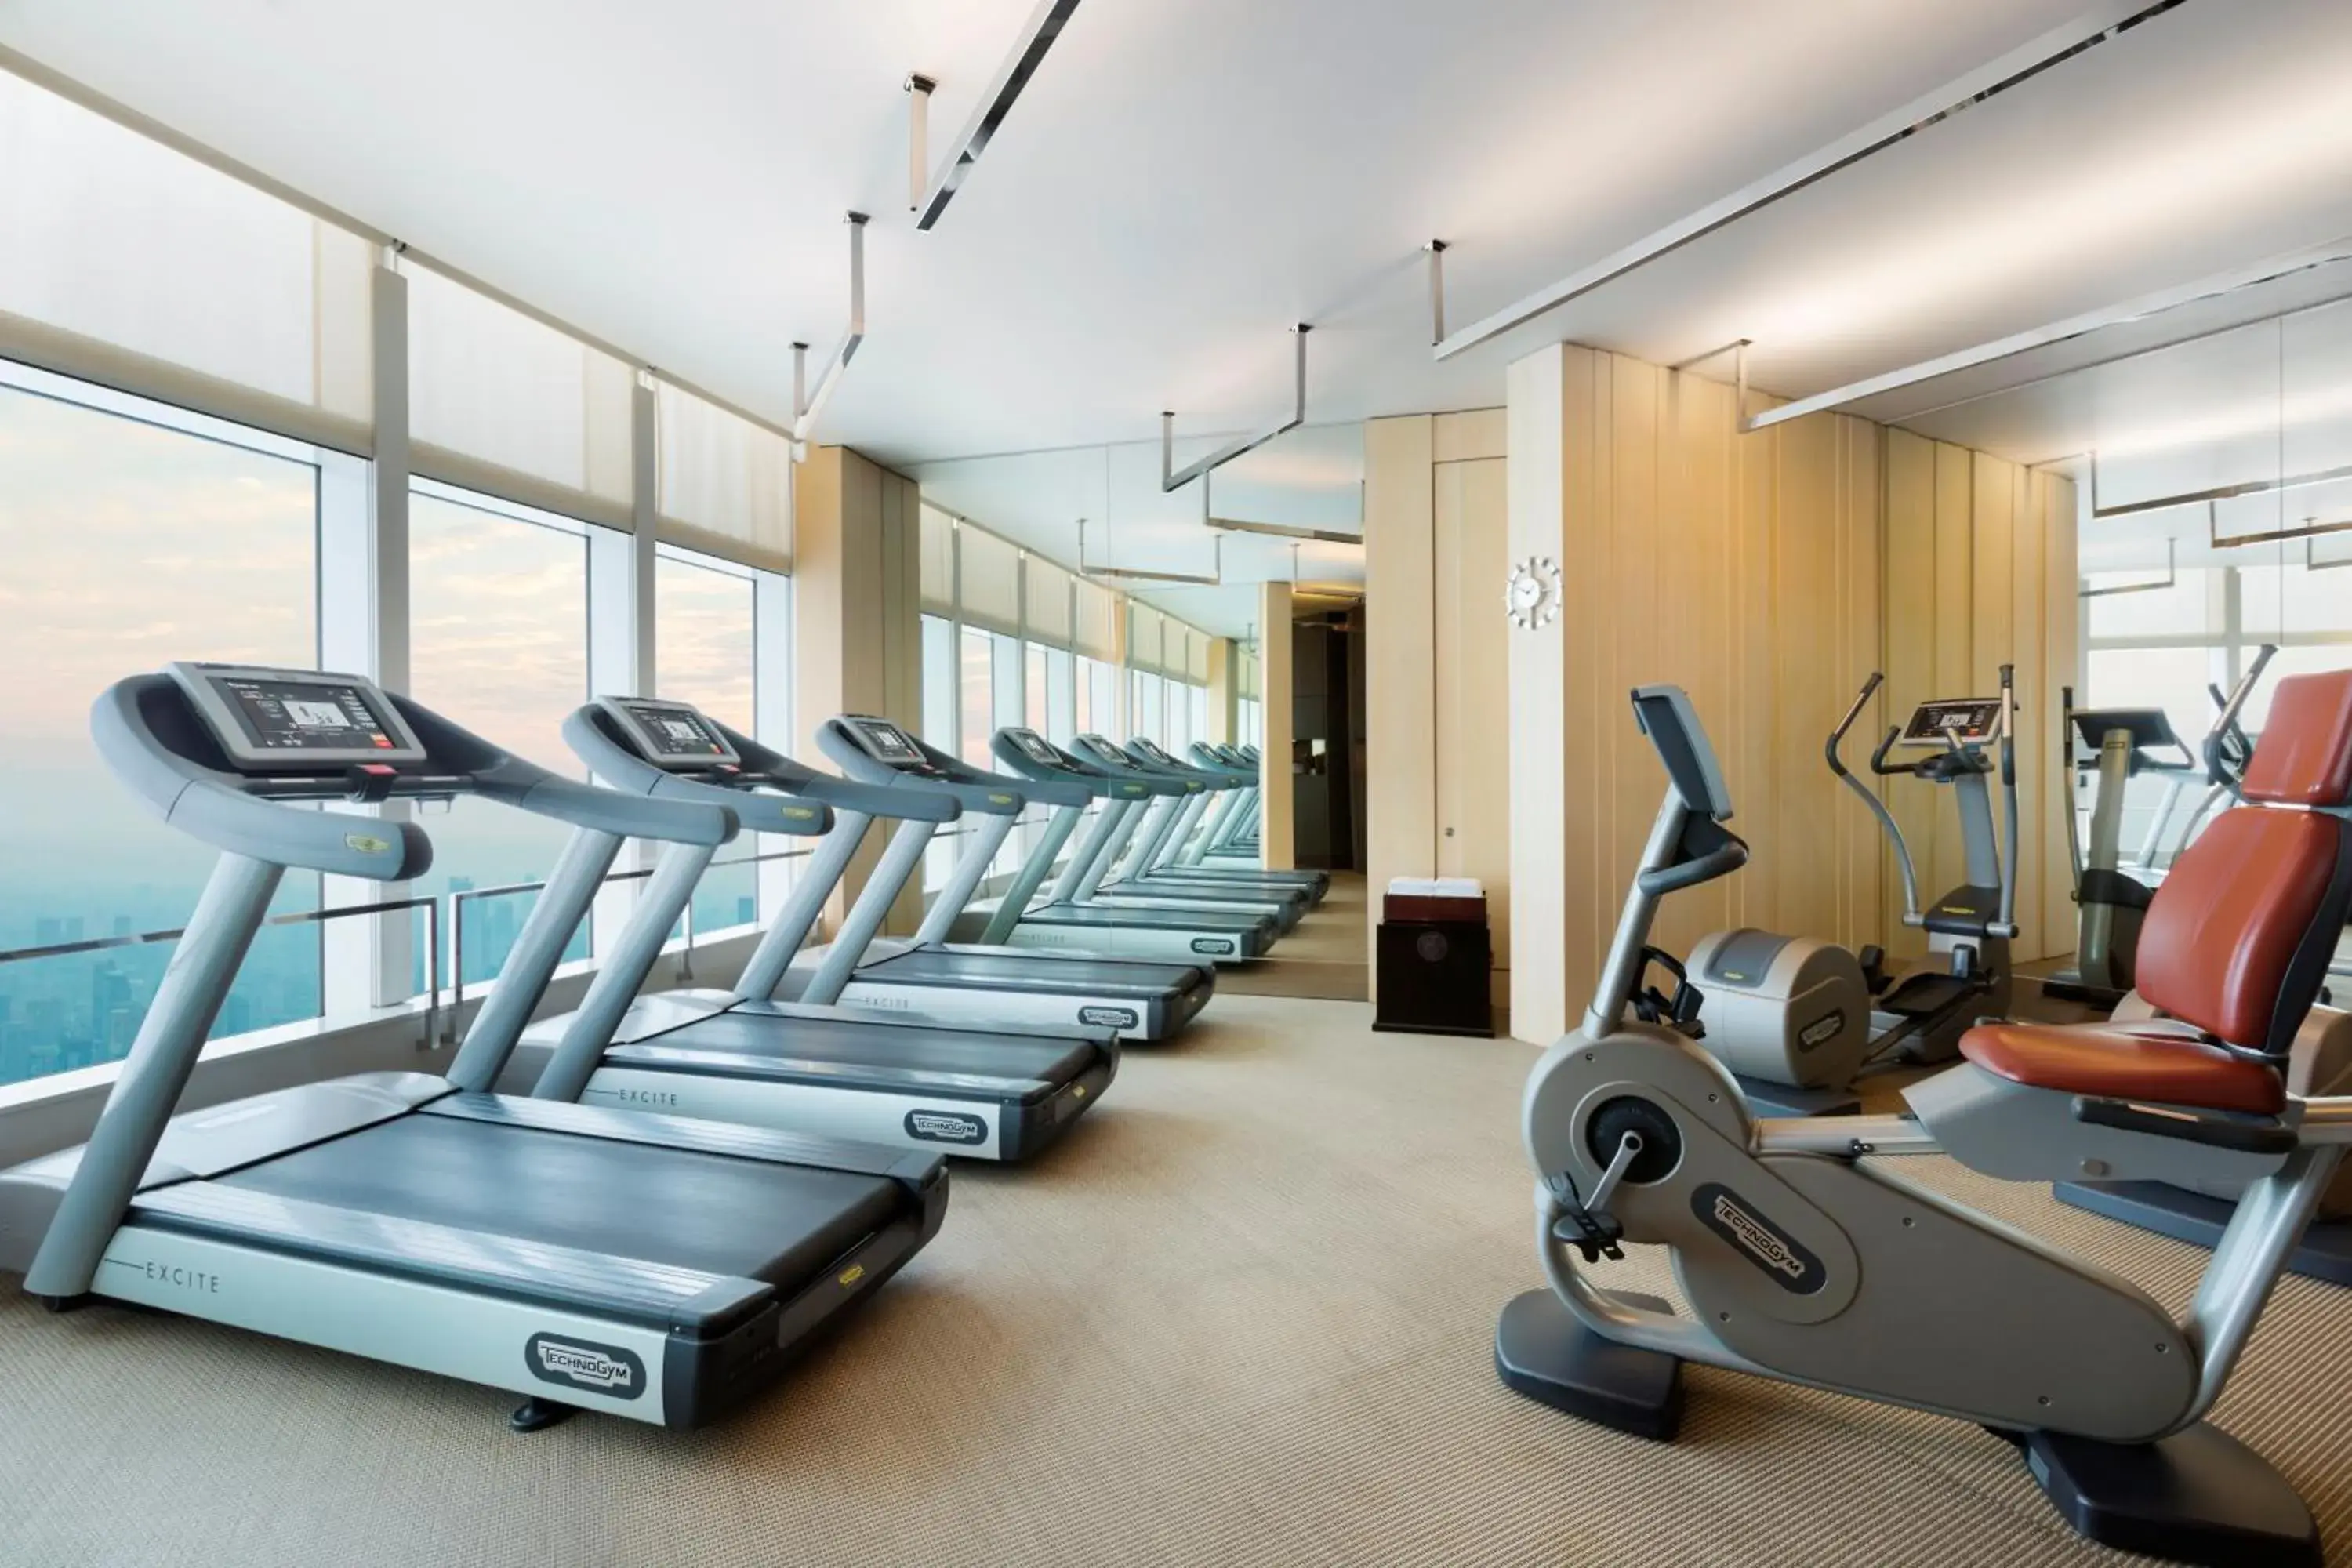 Fitness centre/facilities, Fitness Center/Facilities in Park Hyatt Shanghai